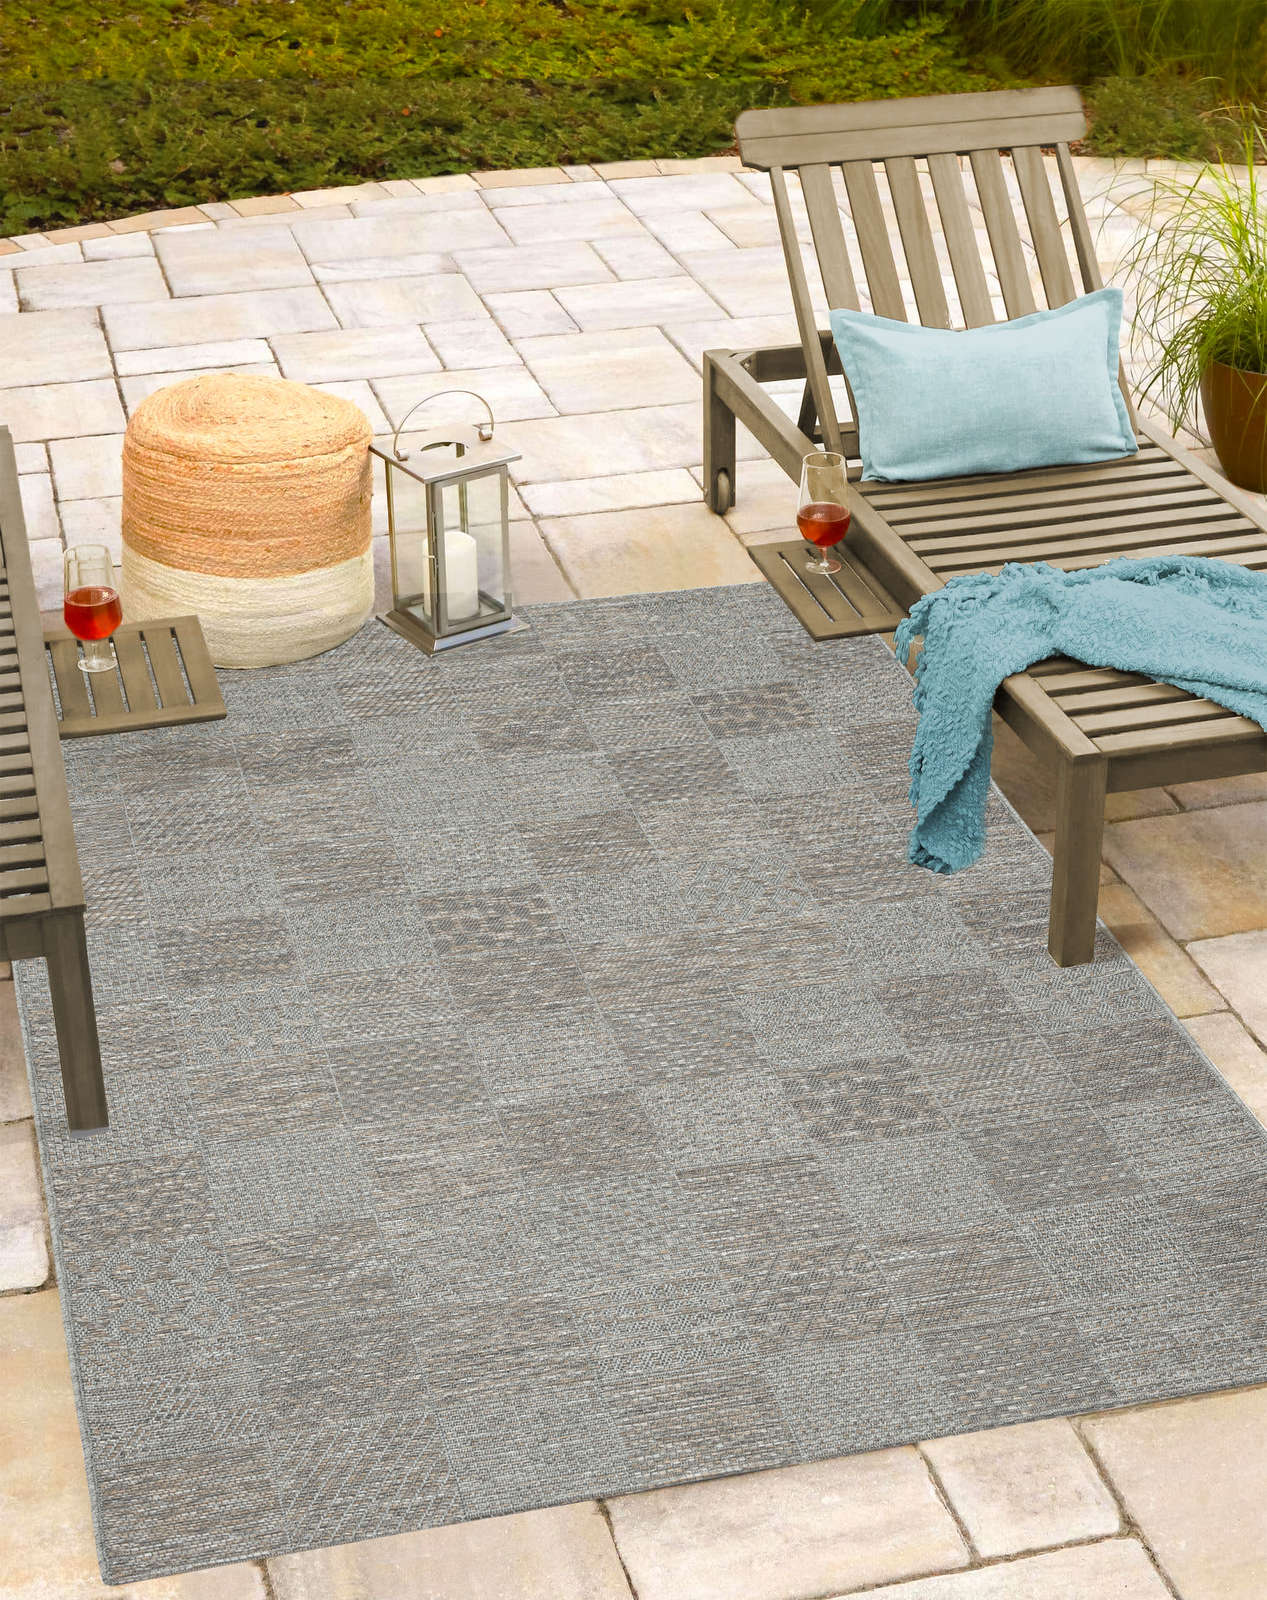             Schlichter Outdoor Teppich in Greige – 280 x 200 cm
        